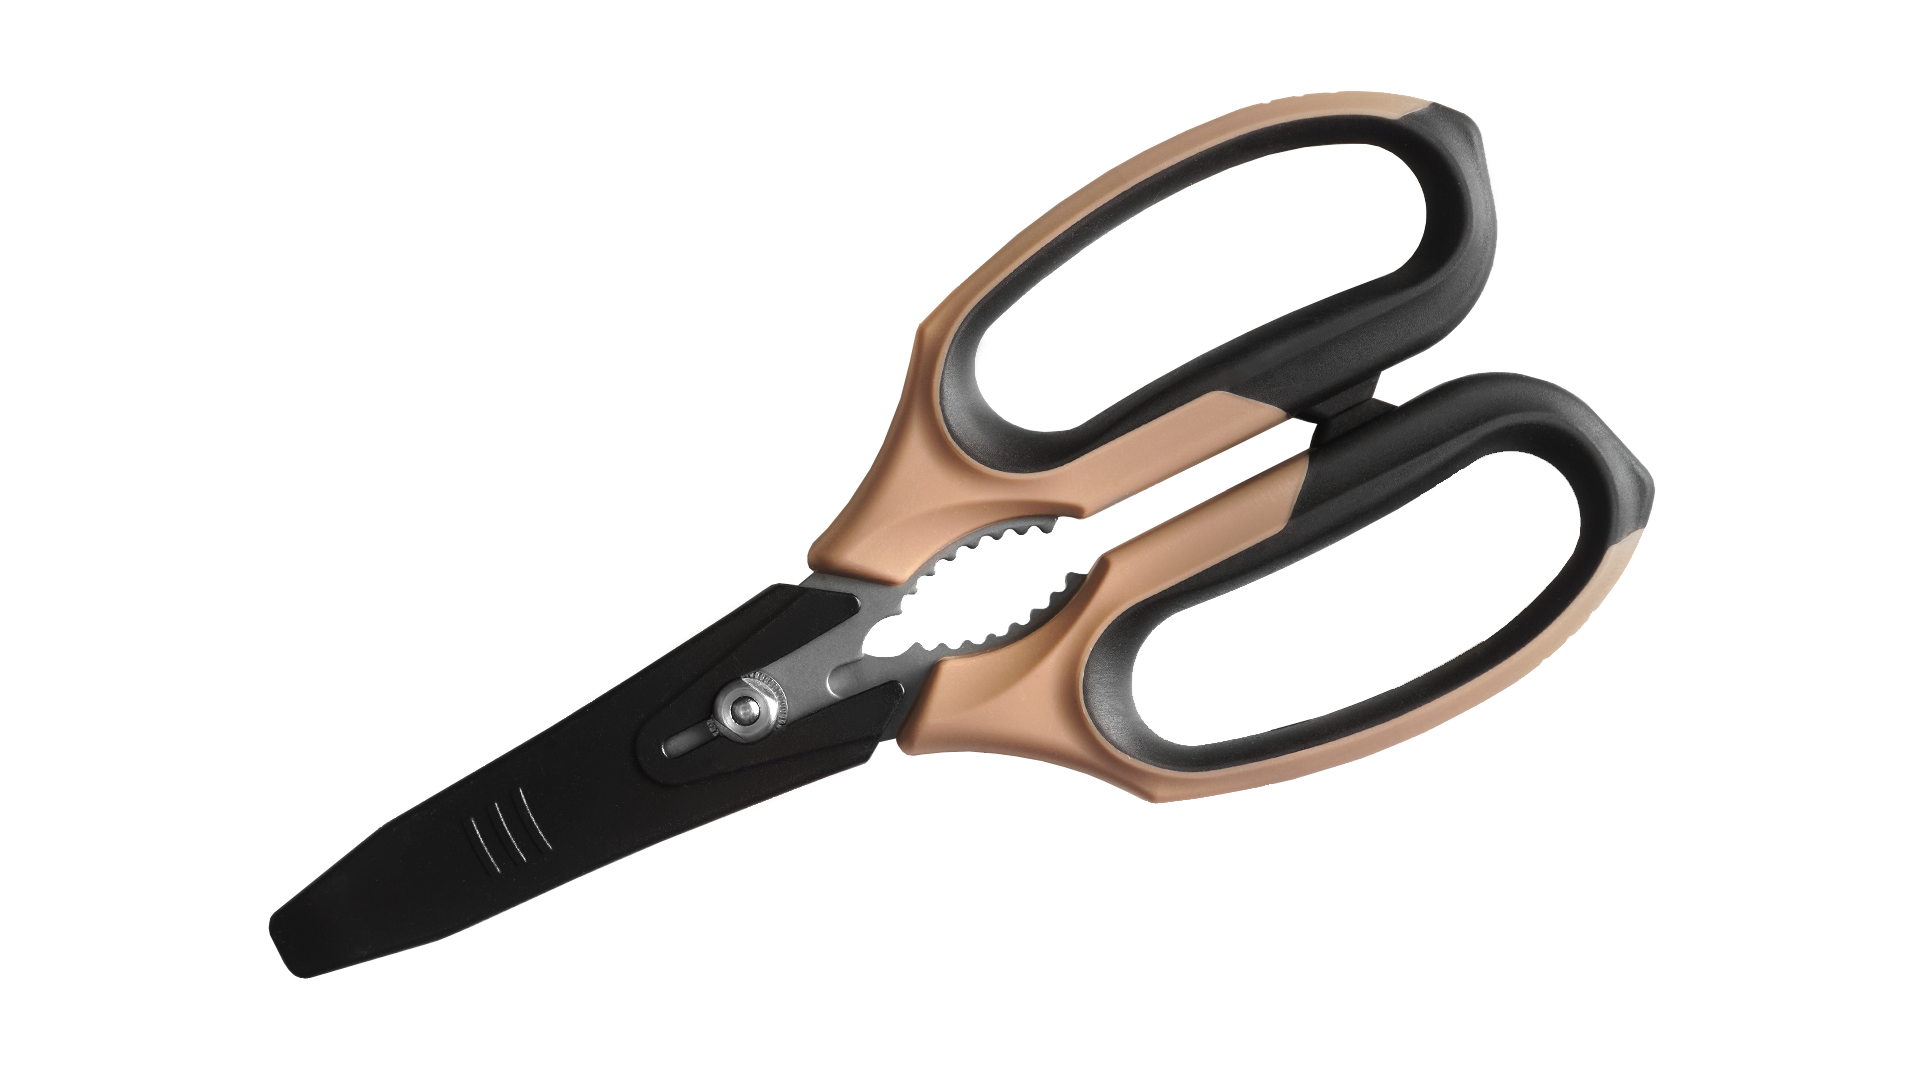 Desert Multi-Function Scissors